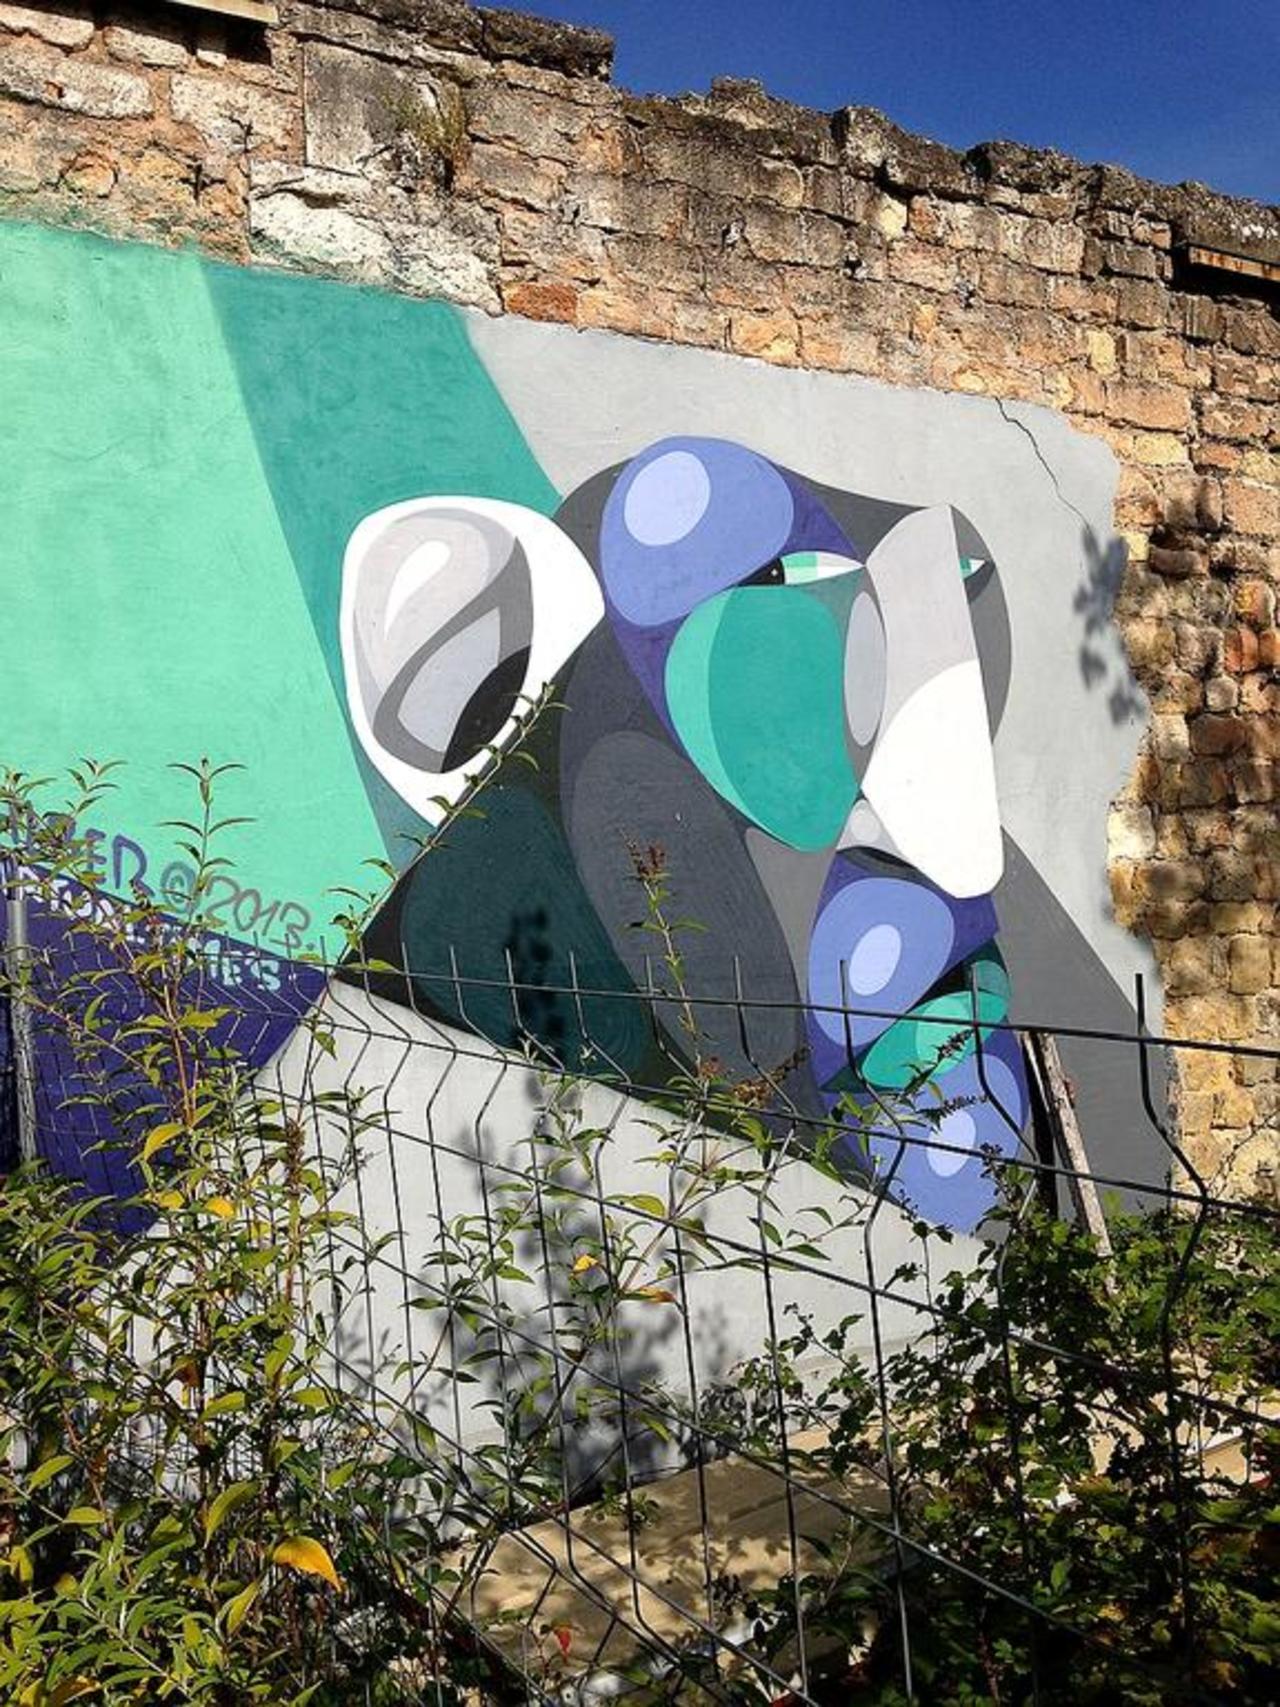 Street Art by Alber in #Bordeaux http://www.urbacolors.com #art #mural #graffiti #streetart https://t.co/ti40CkNK0U